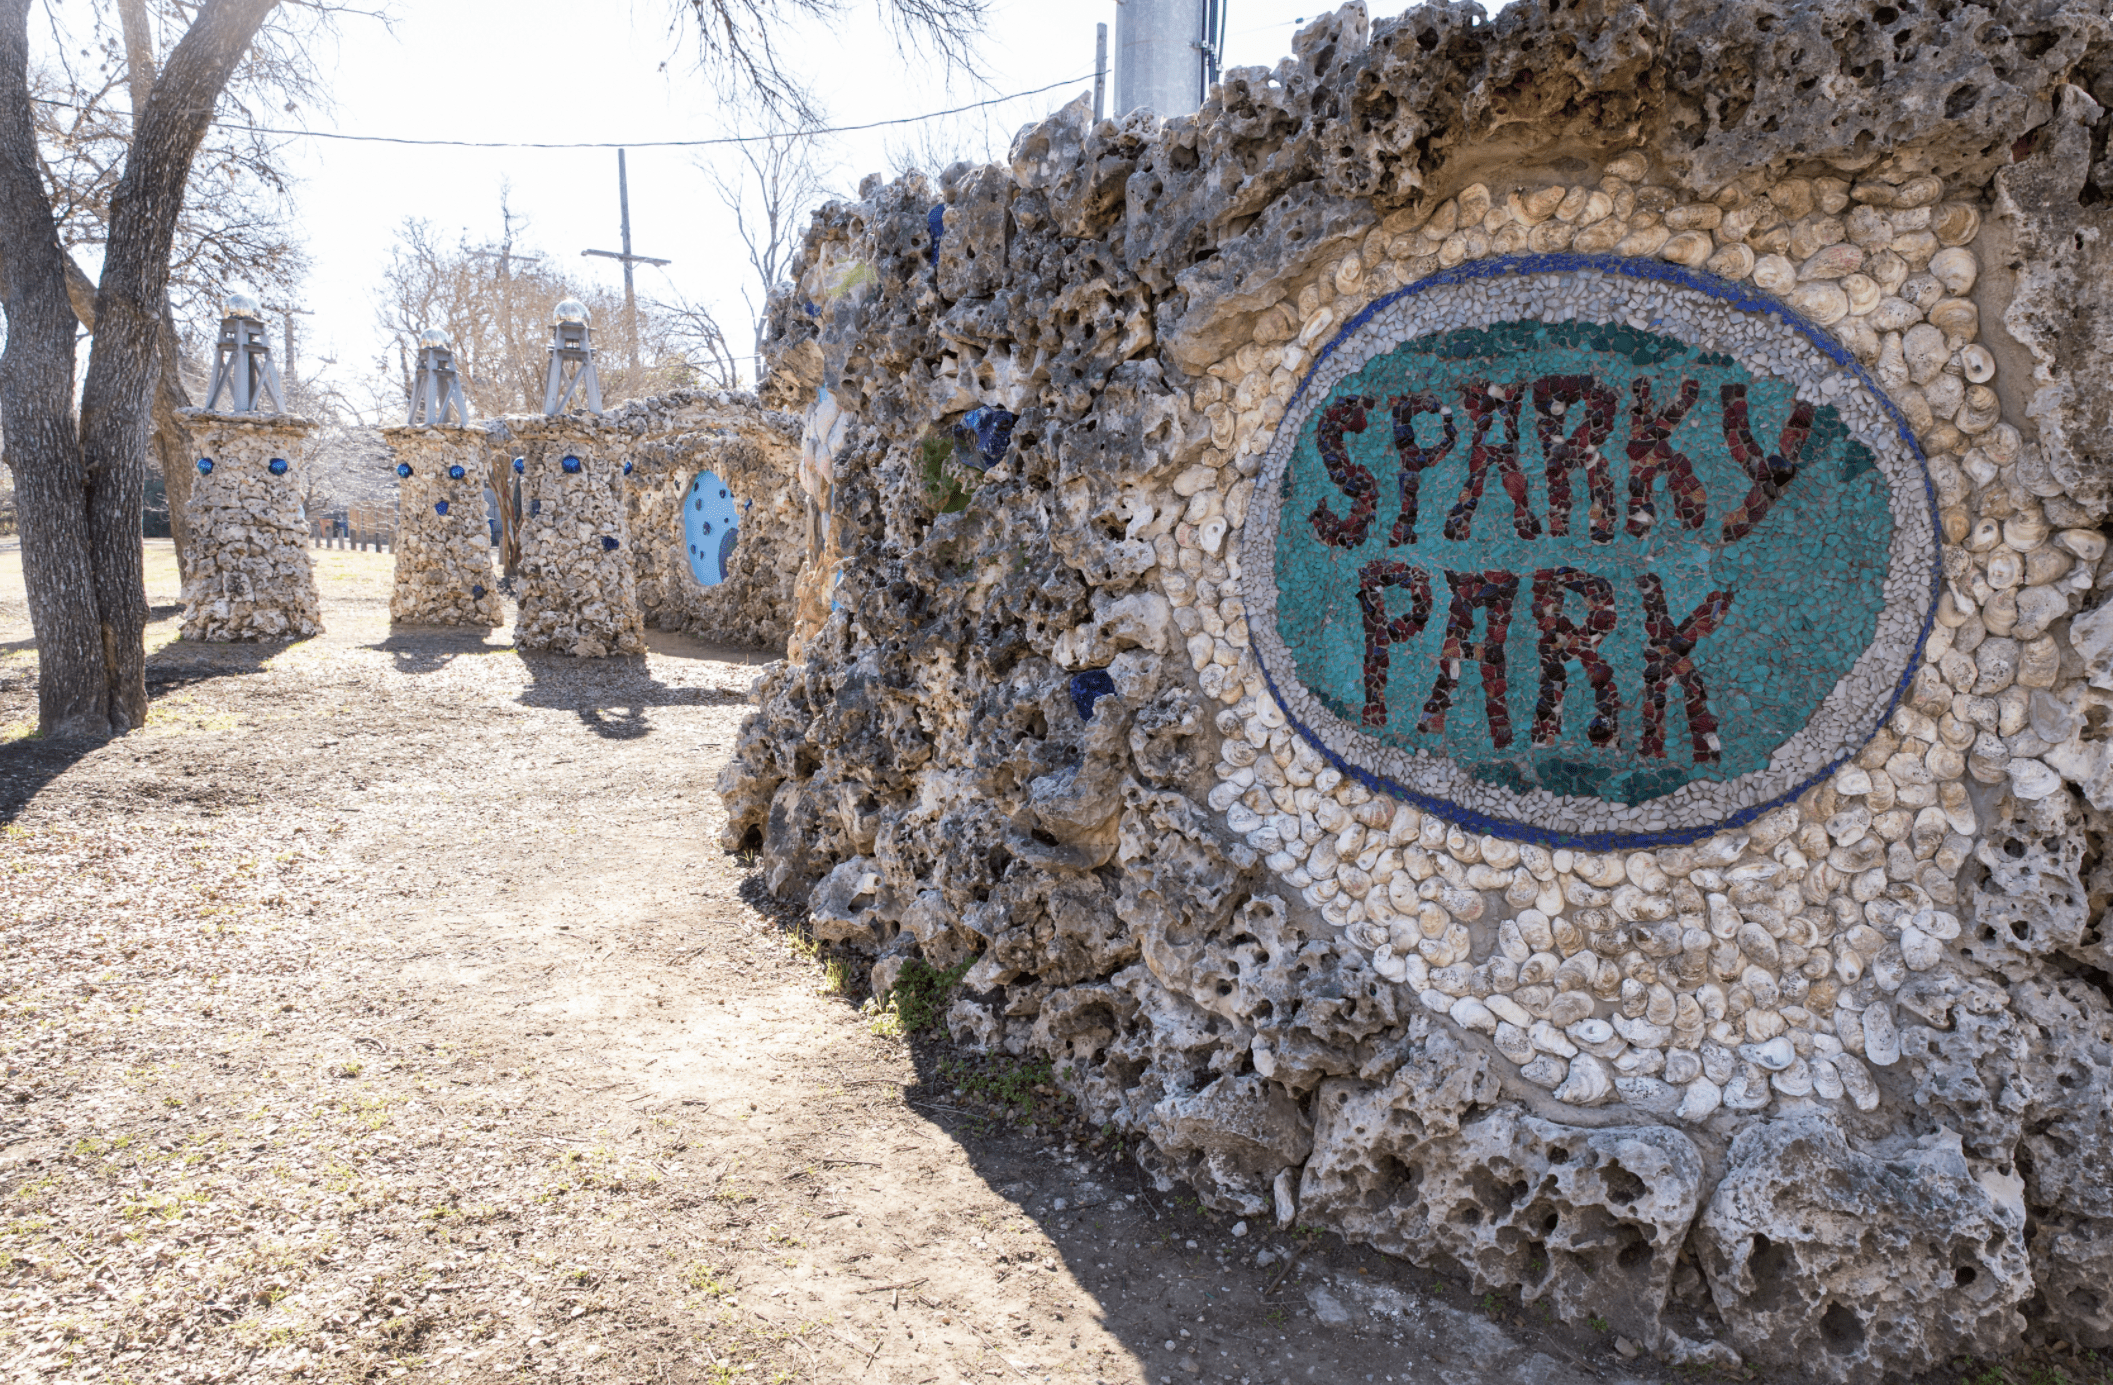 Sparky Park in Austin Texas